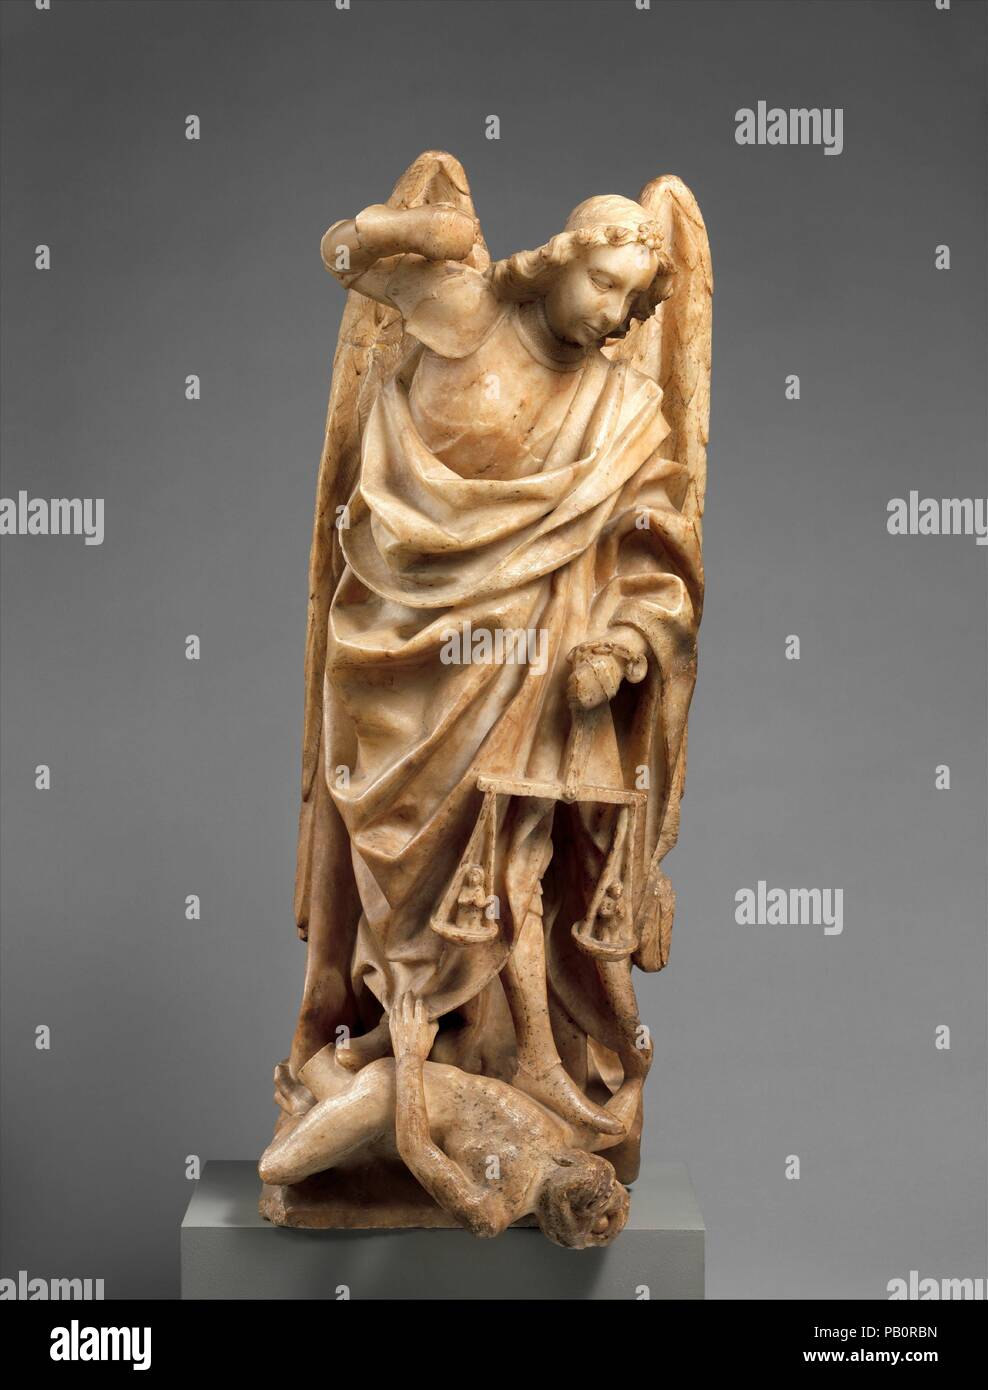 San Michele. Cultura: Spagnolo. Dimensioni: 31 7/8 x 12 1/2 x 9 1/2 in., 130 lb. (81 x 31,8 x 24,1 cm, 59kg) Base: 3/4 × 11 1/8 x 6 3/8 in. (1,9 × 28,3 × 16,2 cm) Altri (foro per perno in base): 1 15/16 x 13/16 in. (5 x 2 cm). Data: tardo XV secolo. Museo: Metropolitan Museum of Art di New York, Stati Uniti d'America. Foto Stock